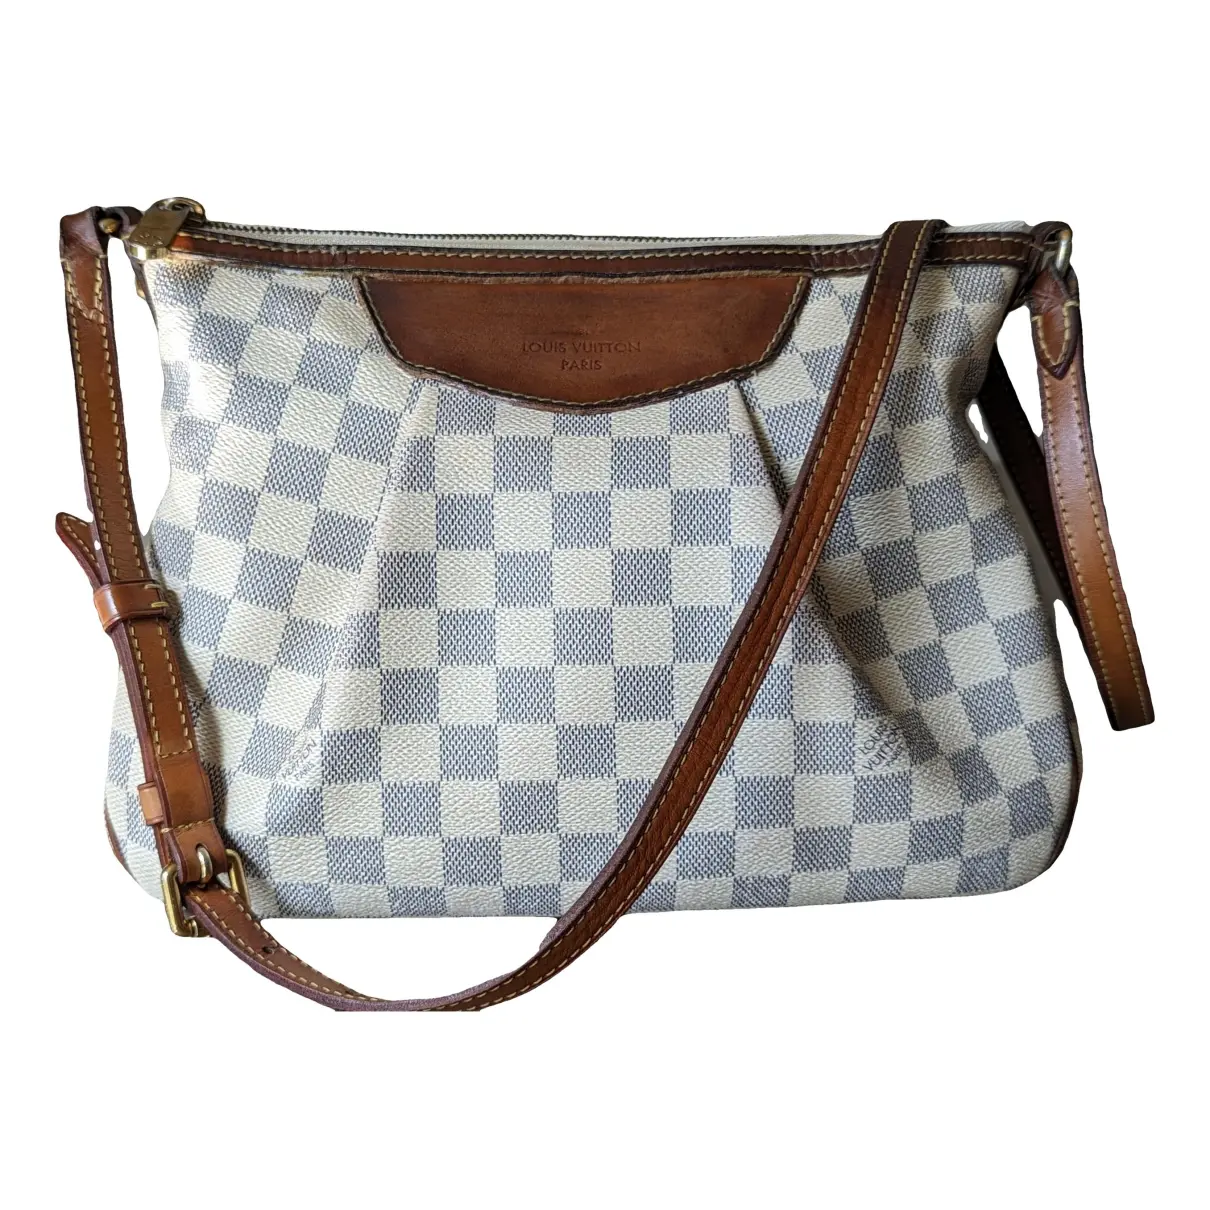 Siracusa leather handbag